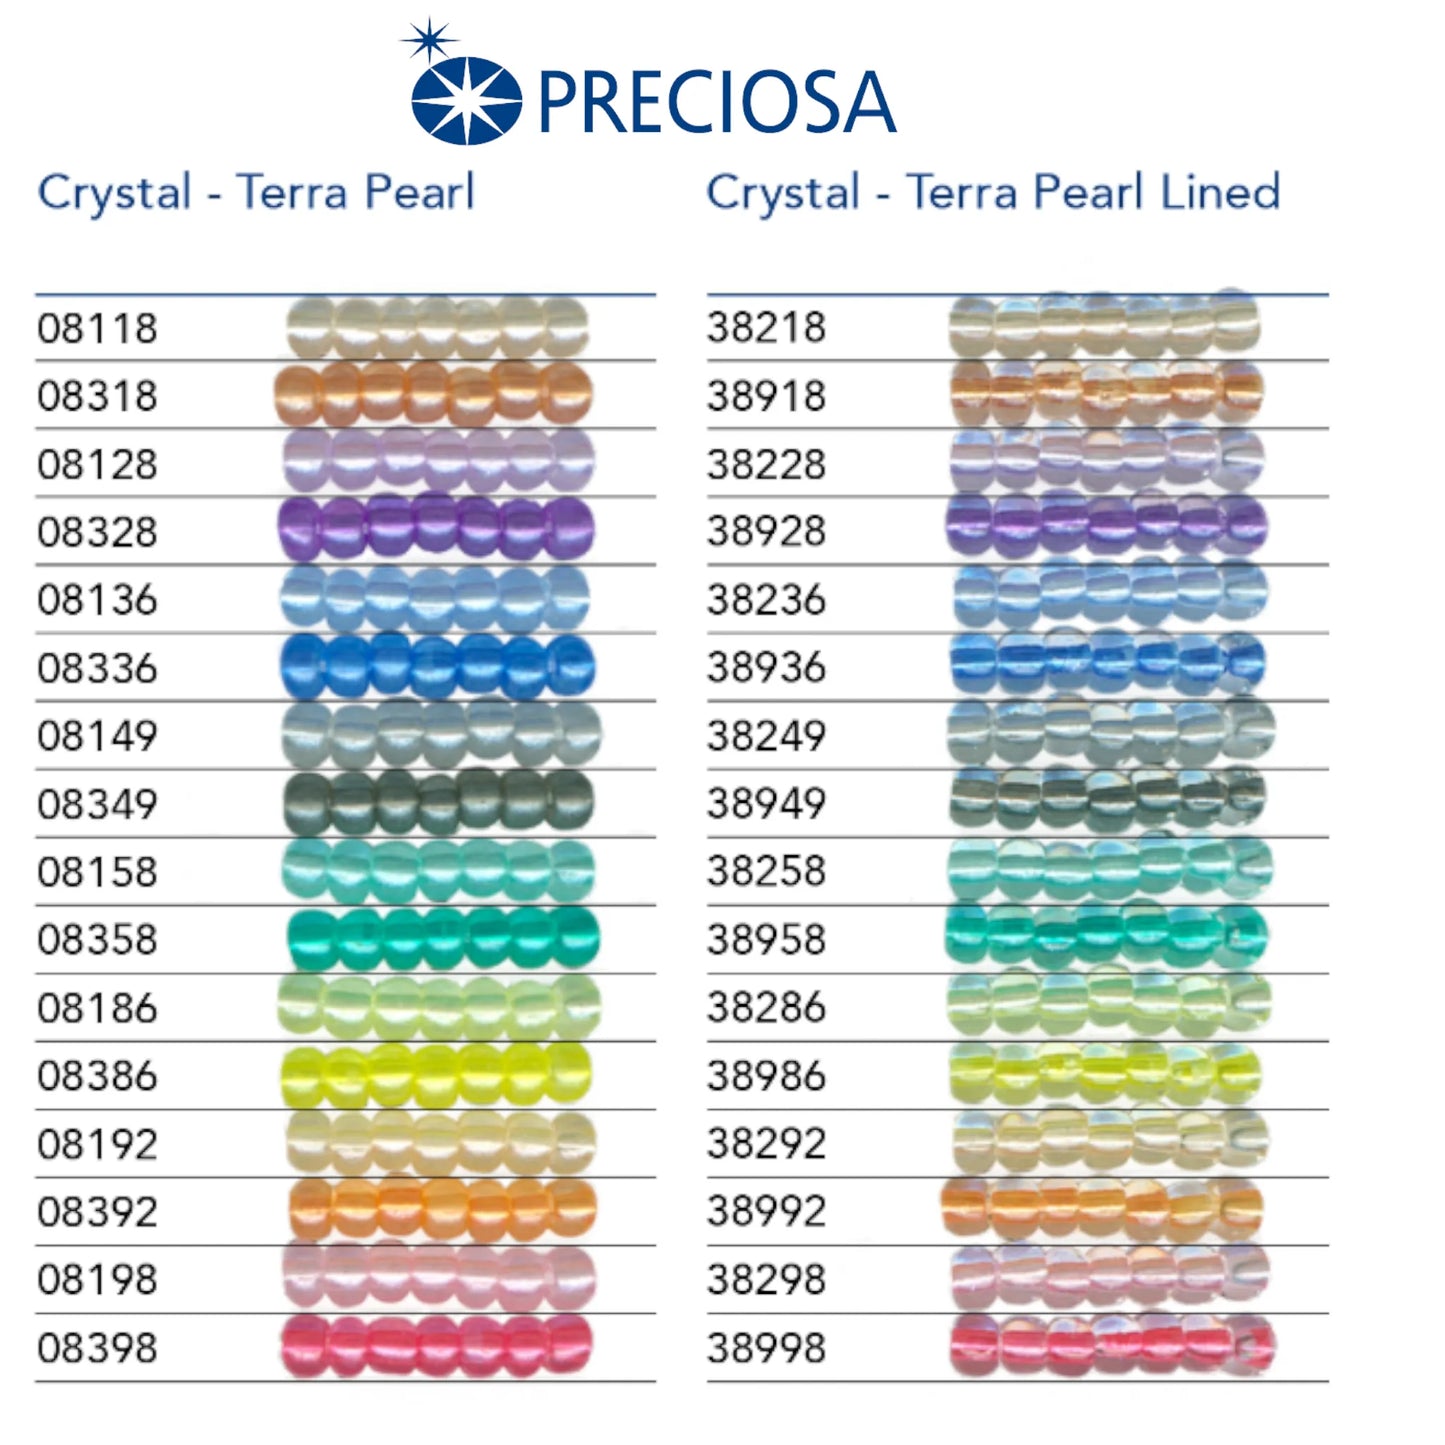 08328 Rocailles tchèques PRECIOSA Rocailles 10/0 lilas. Cristal - Terra Perle.